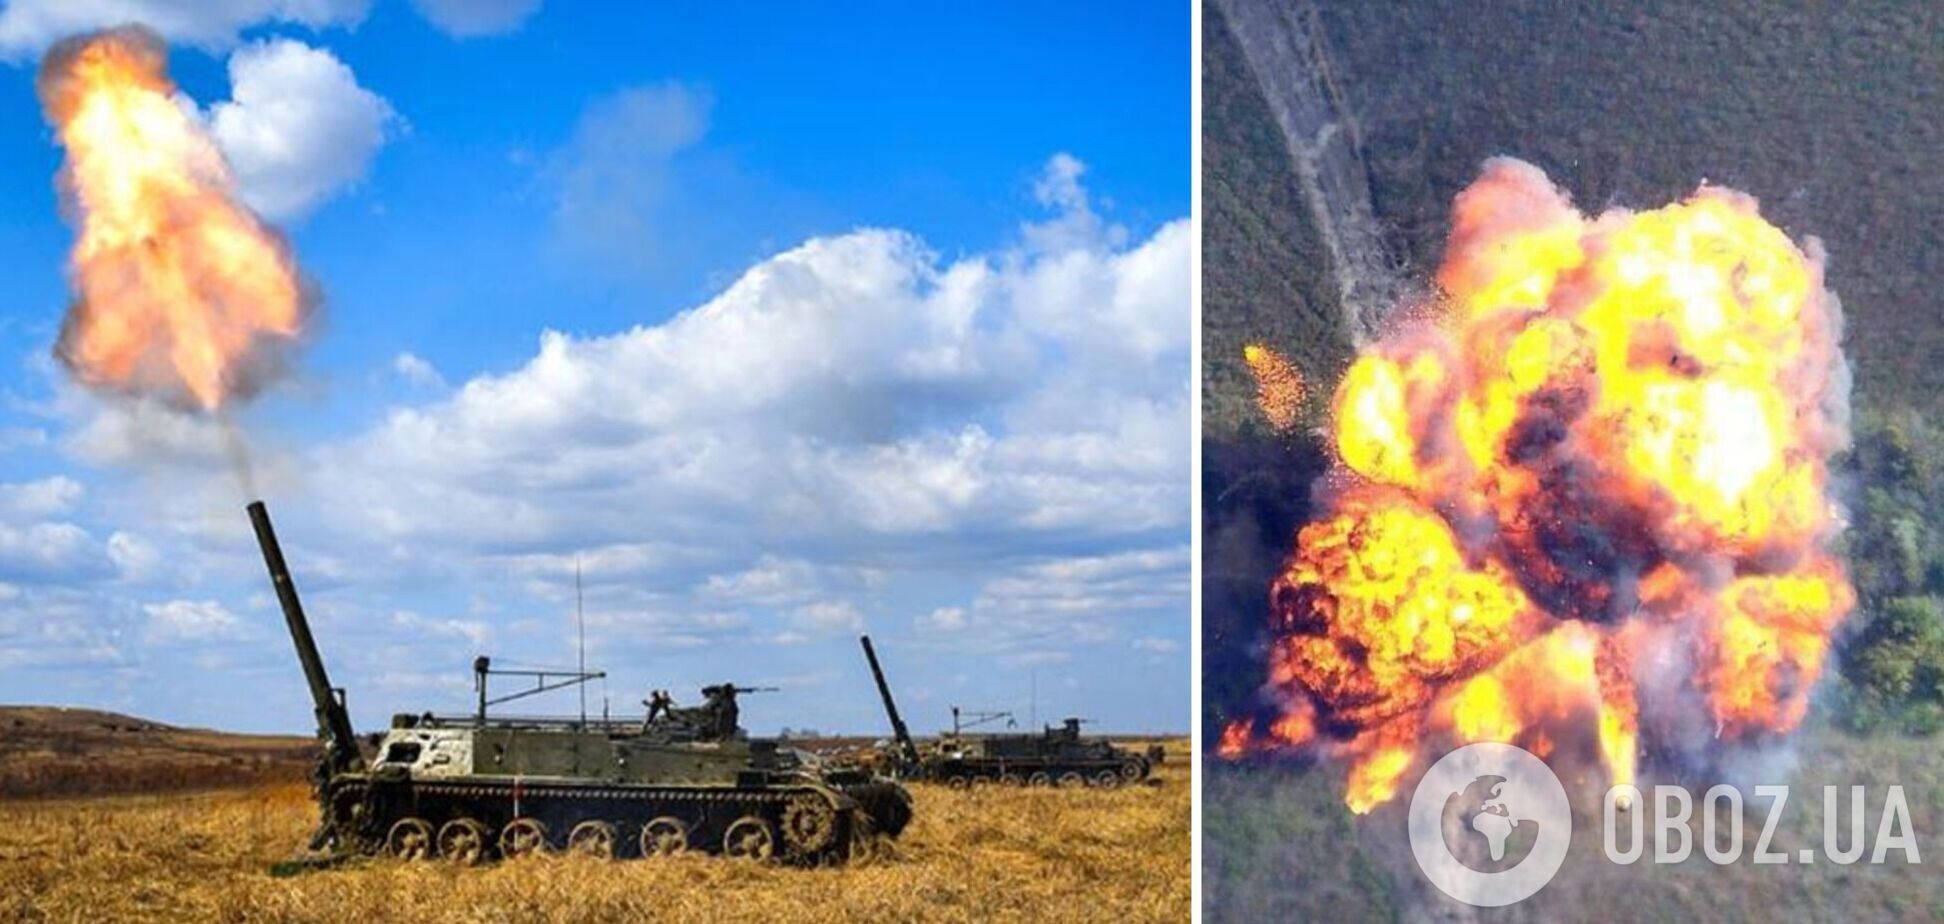 Украинские воины уничтожили дроном вражеский миномет 2С4 'Тюльпан': разлетелся вдребезги. Видео